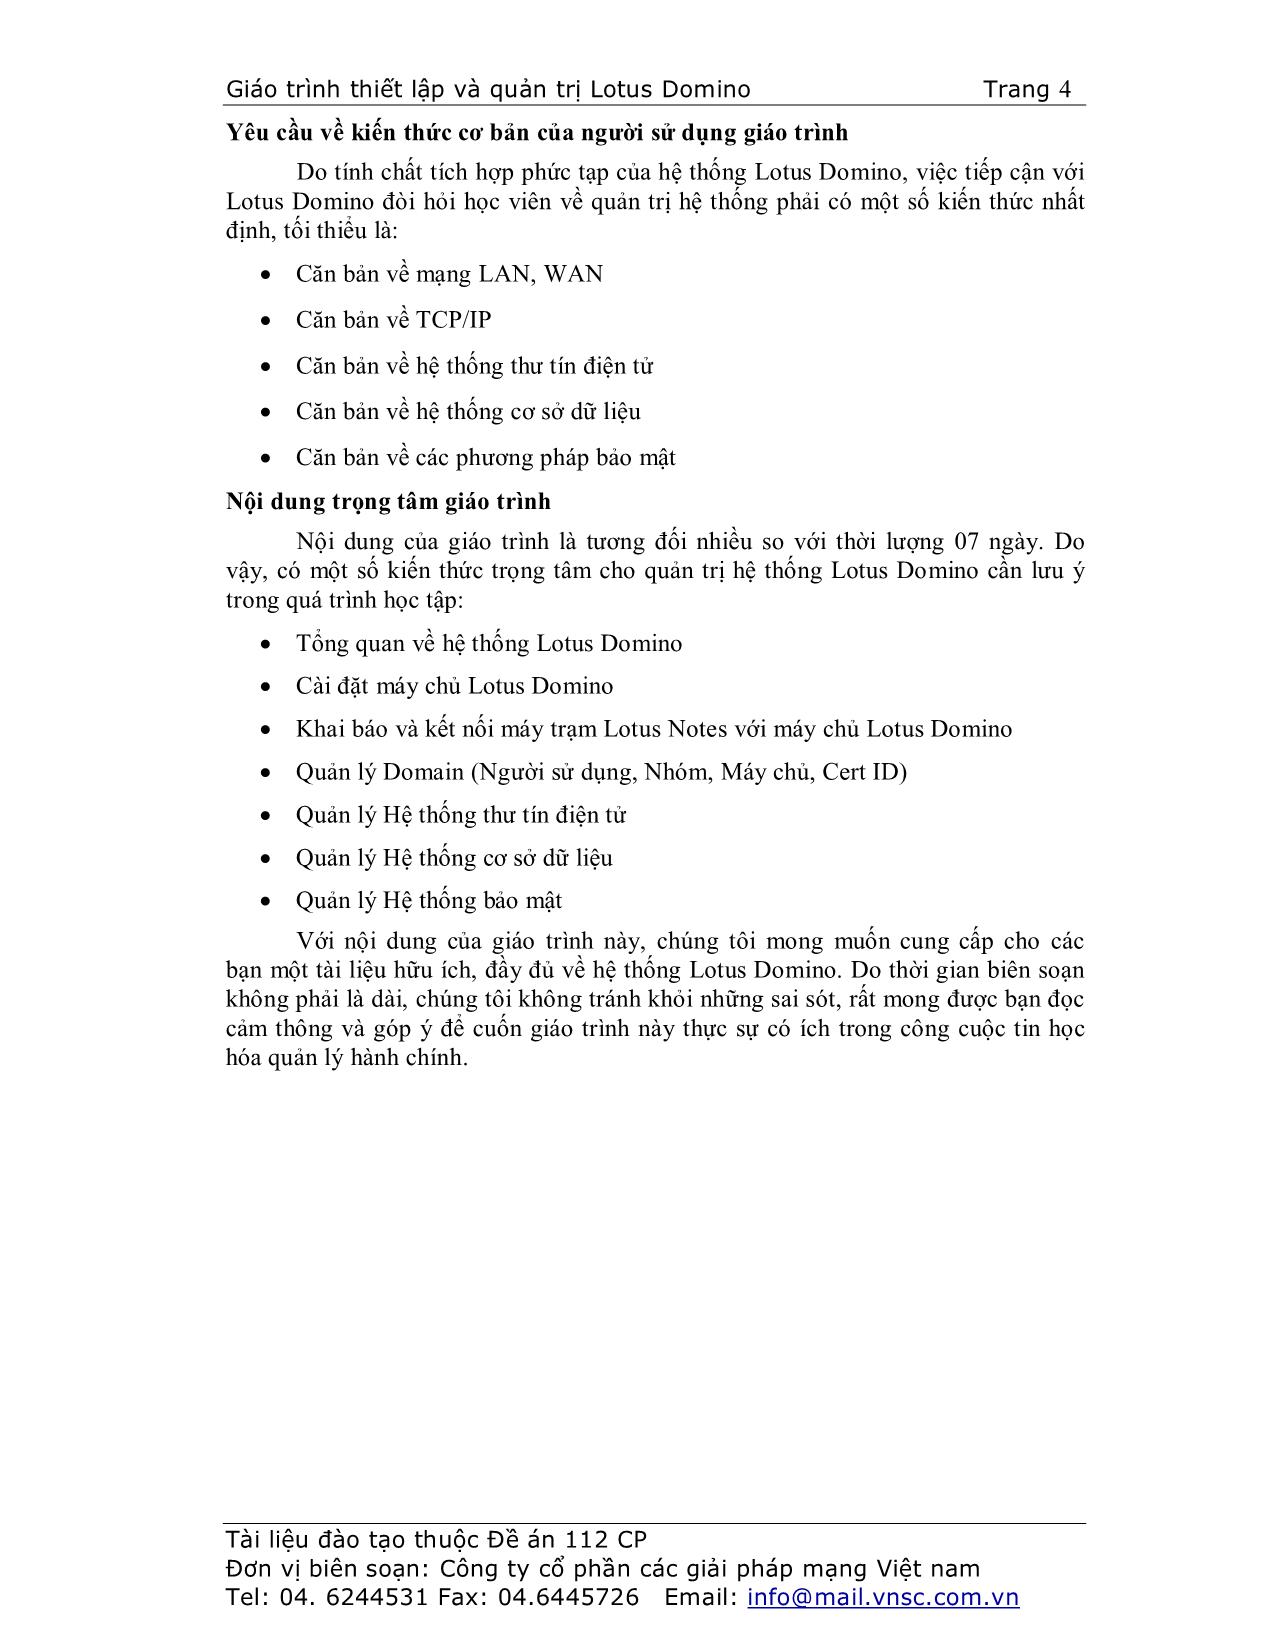 Giáo trình Thiết lập và quản trị Lotus Domino trang 4